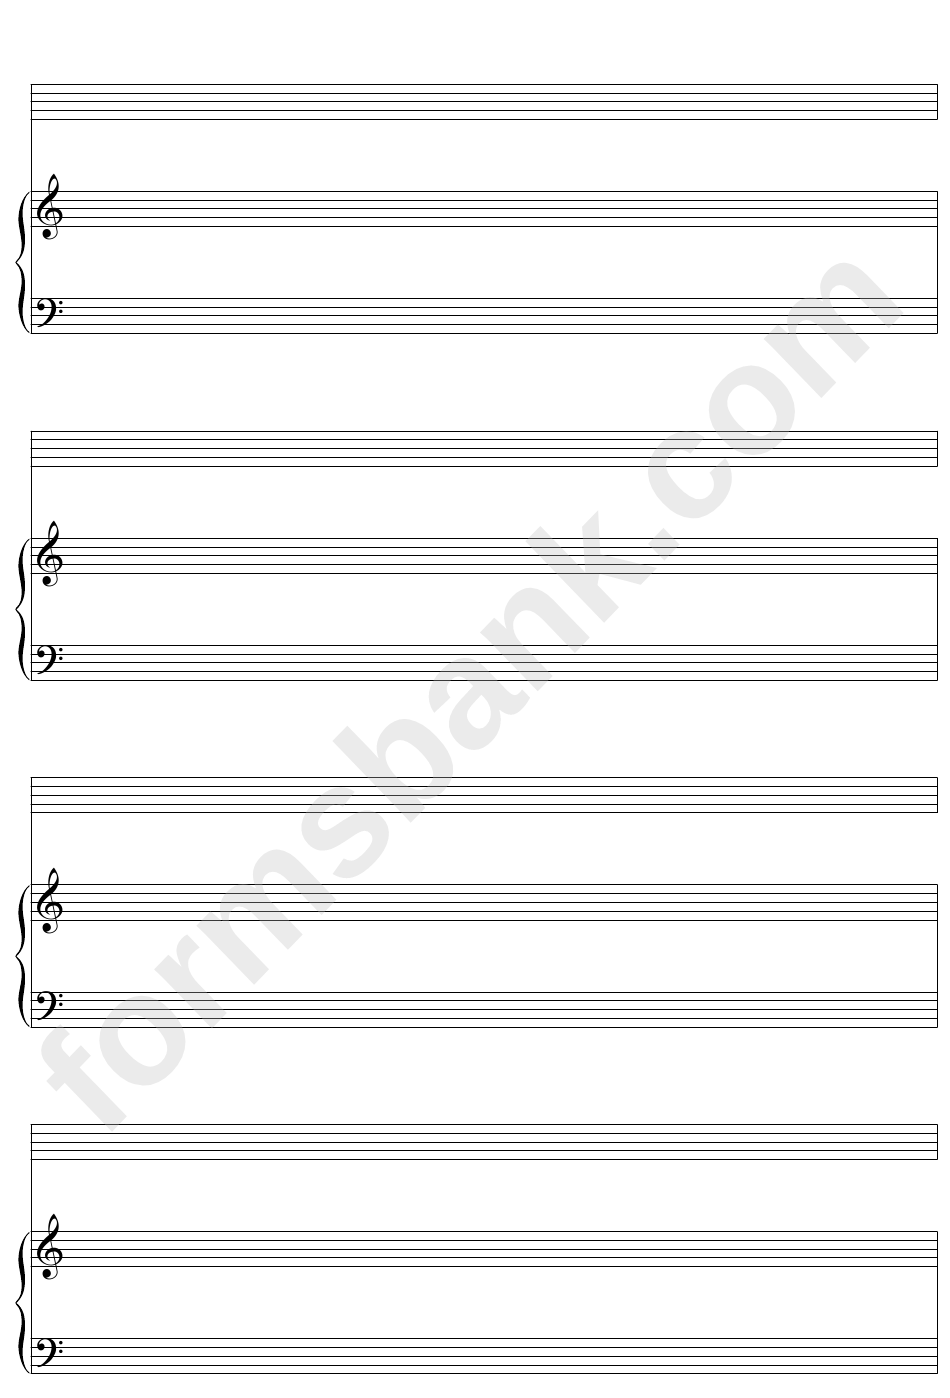 Keyboard + One, Blank Clefs (A4 Portrait) Blank Sheet Music